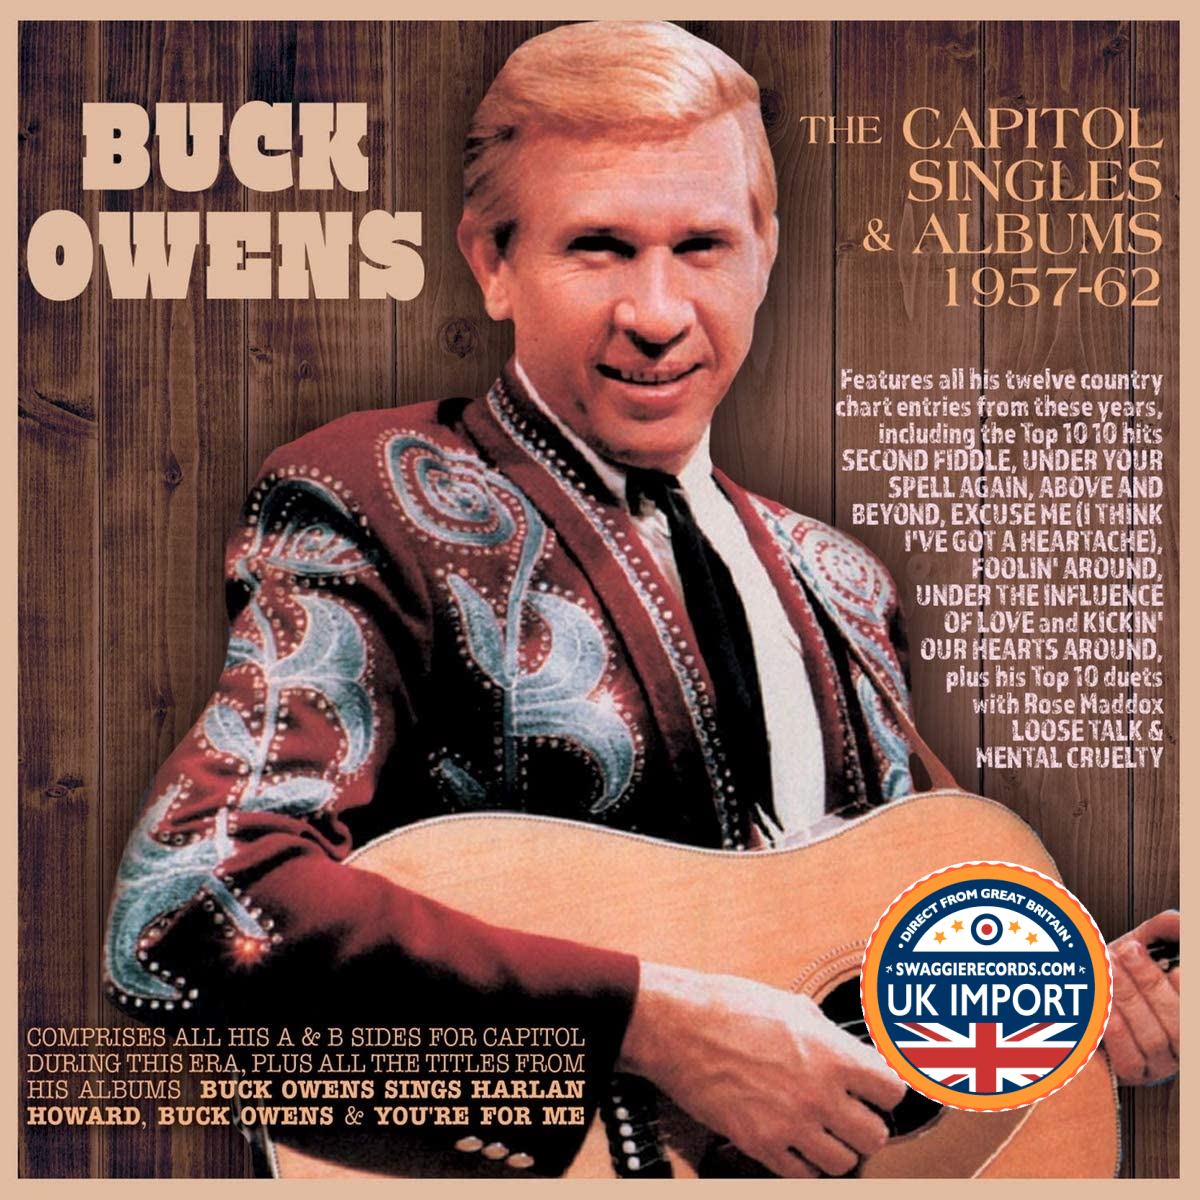 [CD] BUCK OWENS • DIE CAPITOL SINGLES & ALBUMS 1957-62 • 2-DISC-SET • UK IMPORT